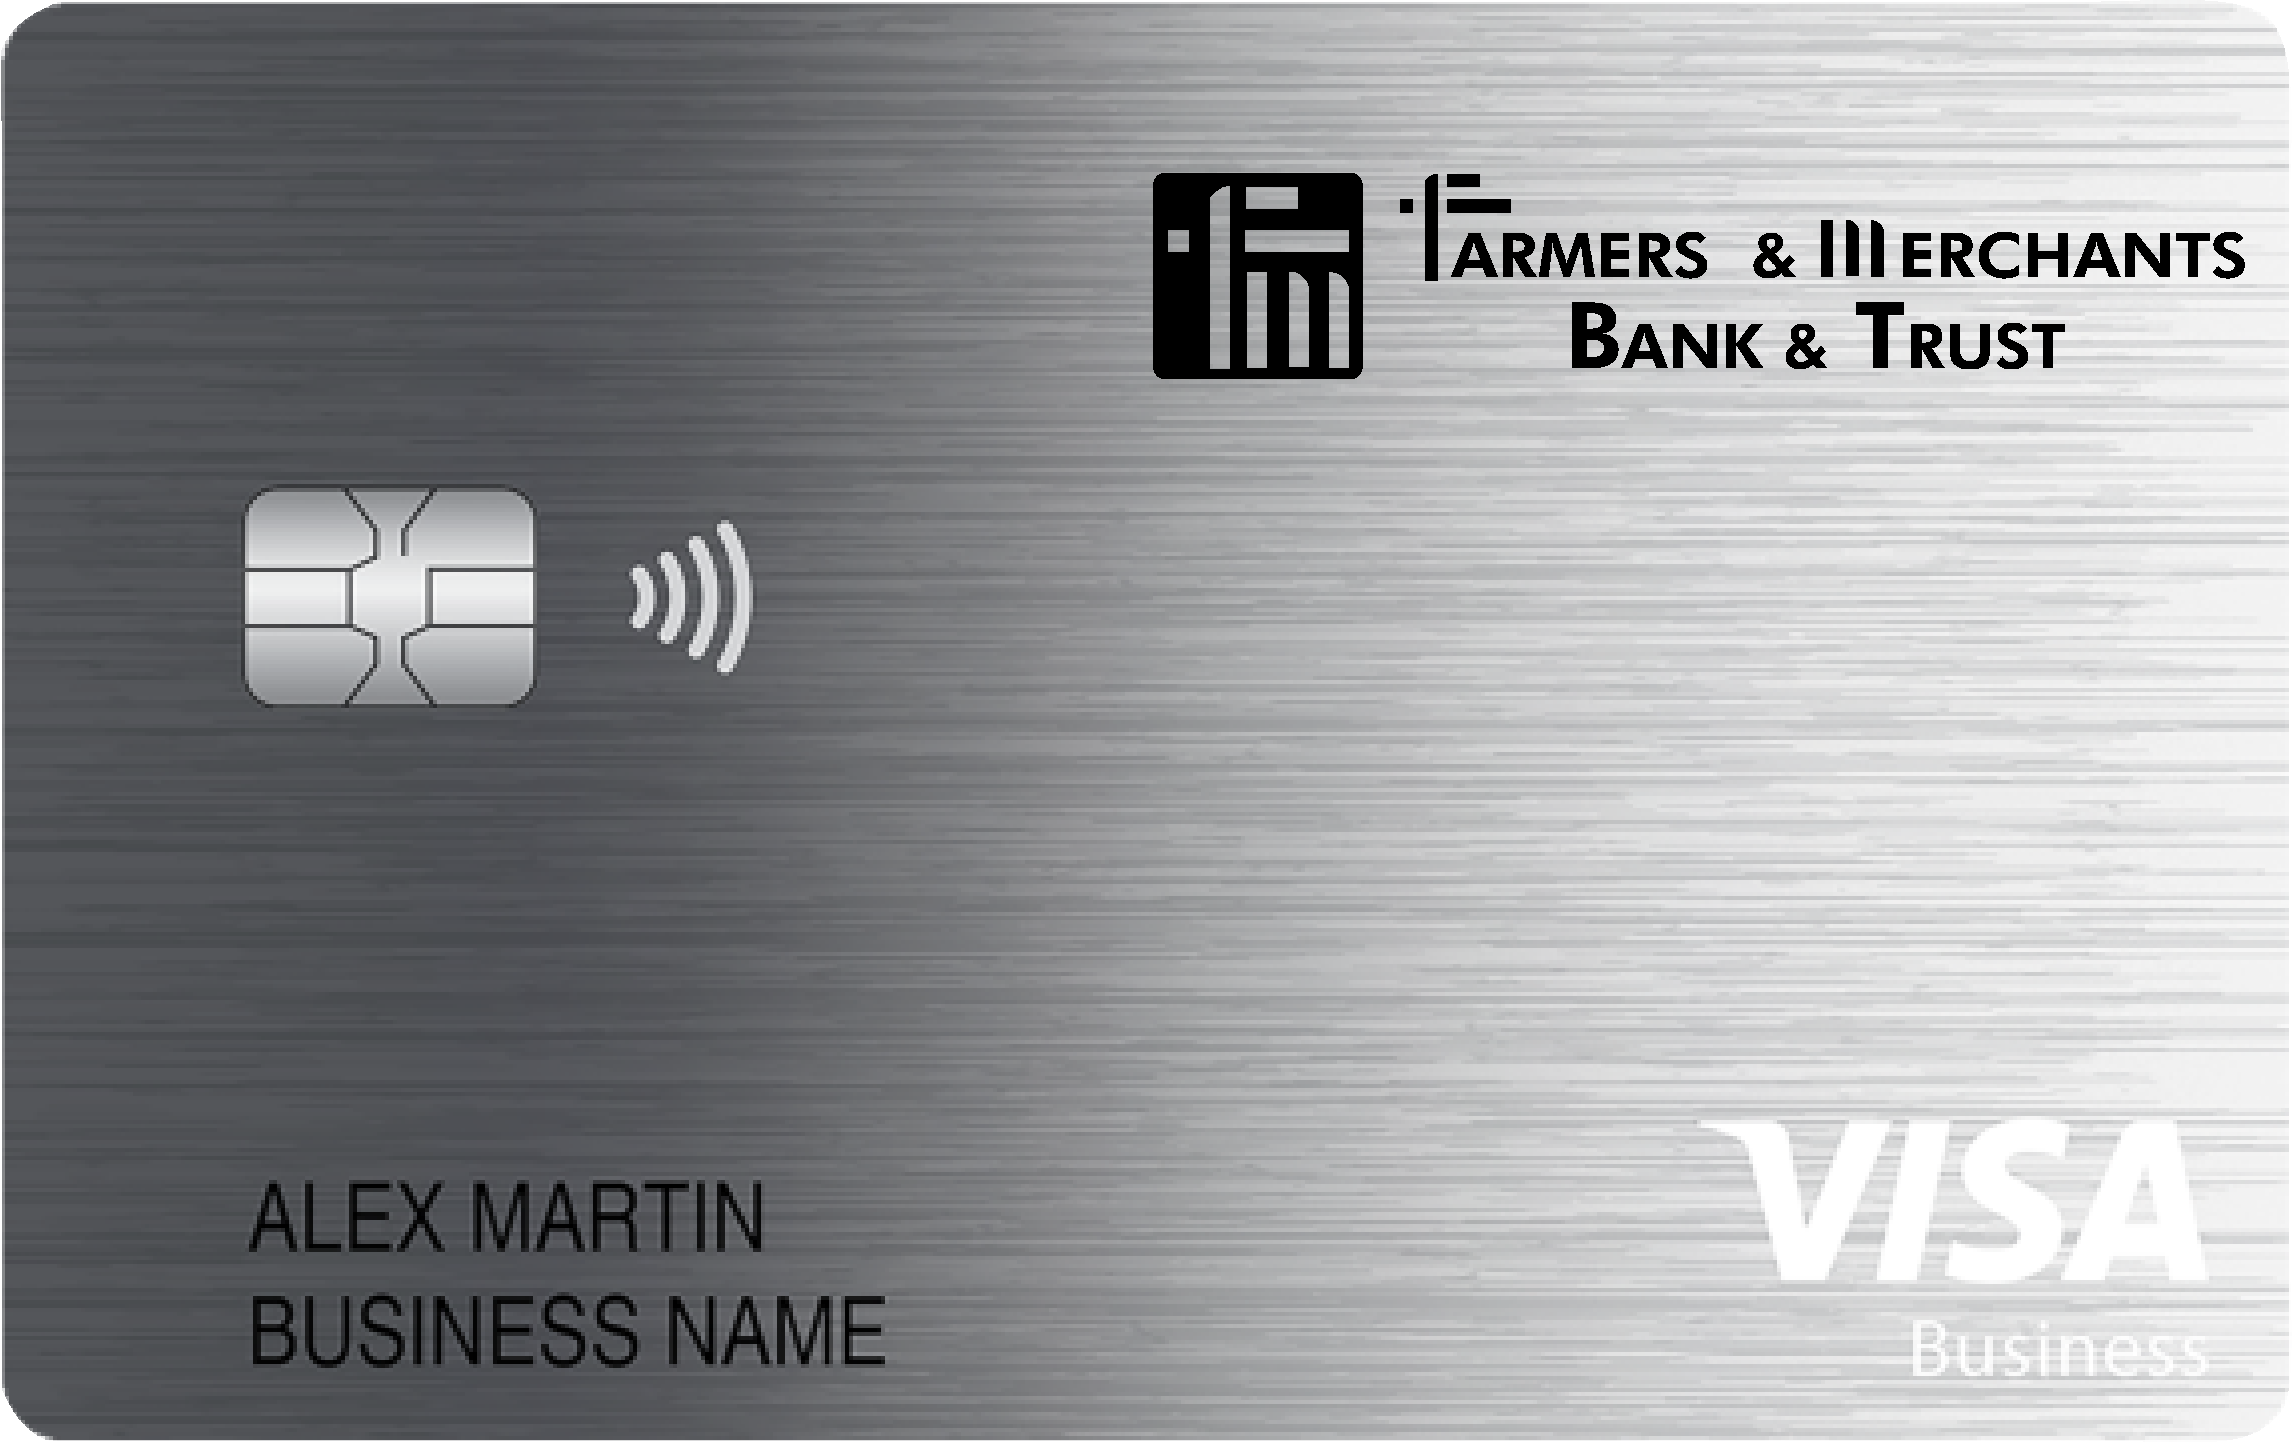 Farmers & Merchants Bank & Trust Business Card Card